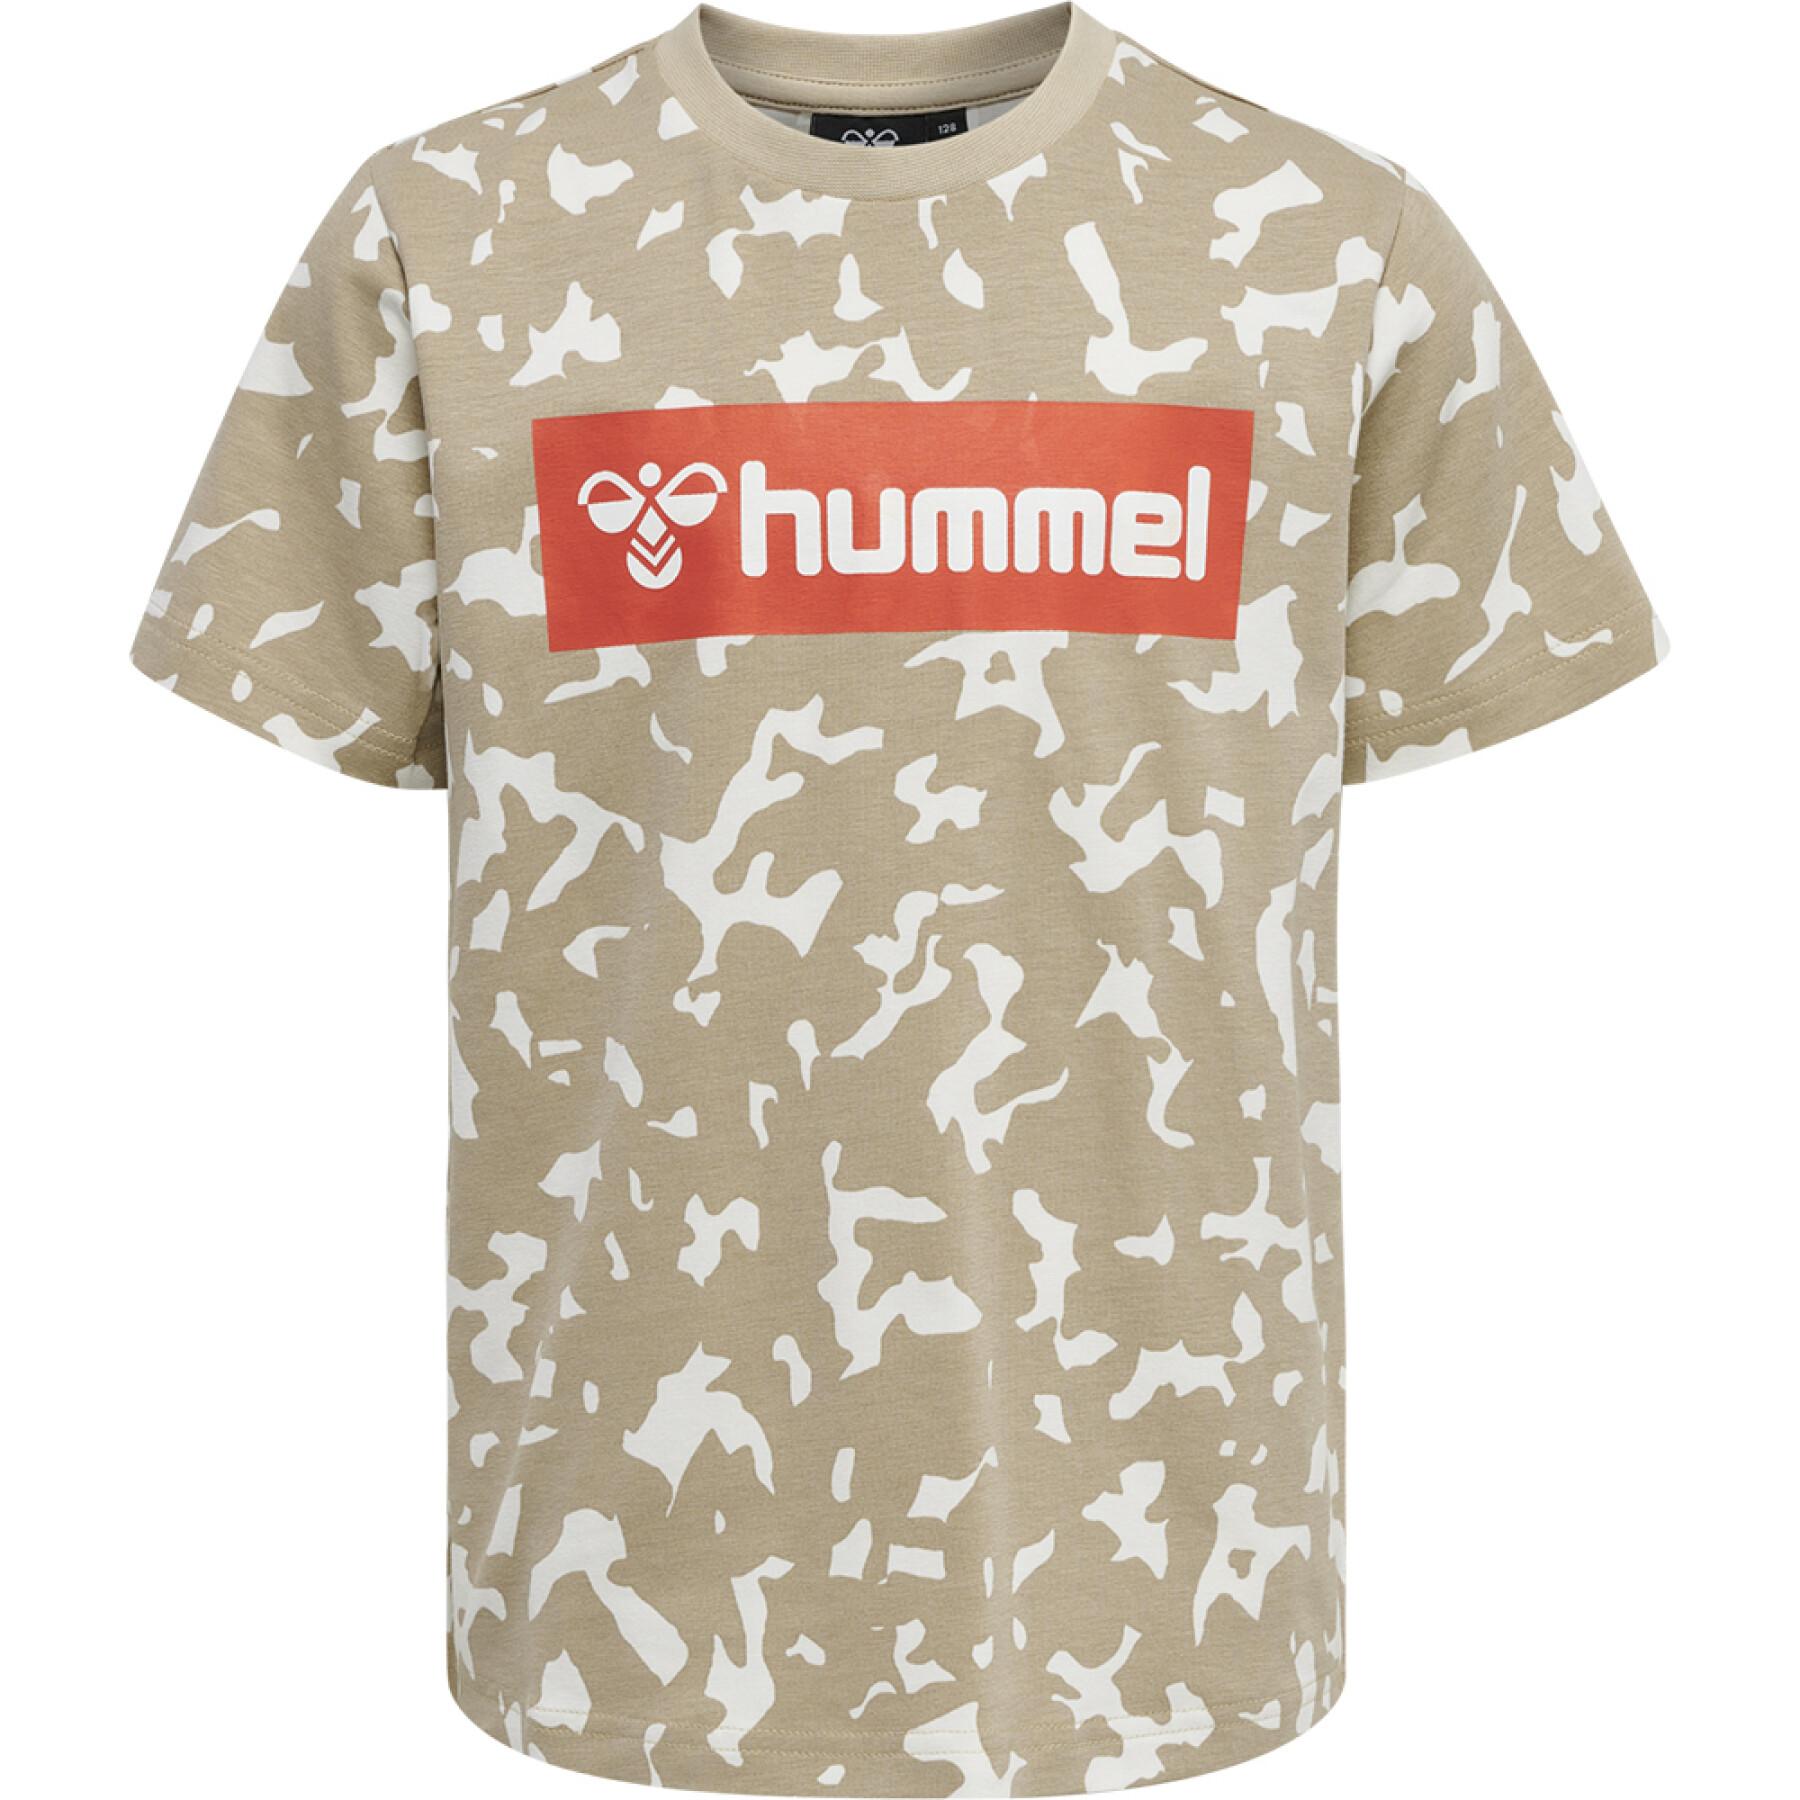 T-shirt de criança Hummel hmlCarter